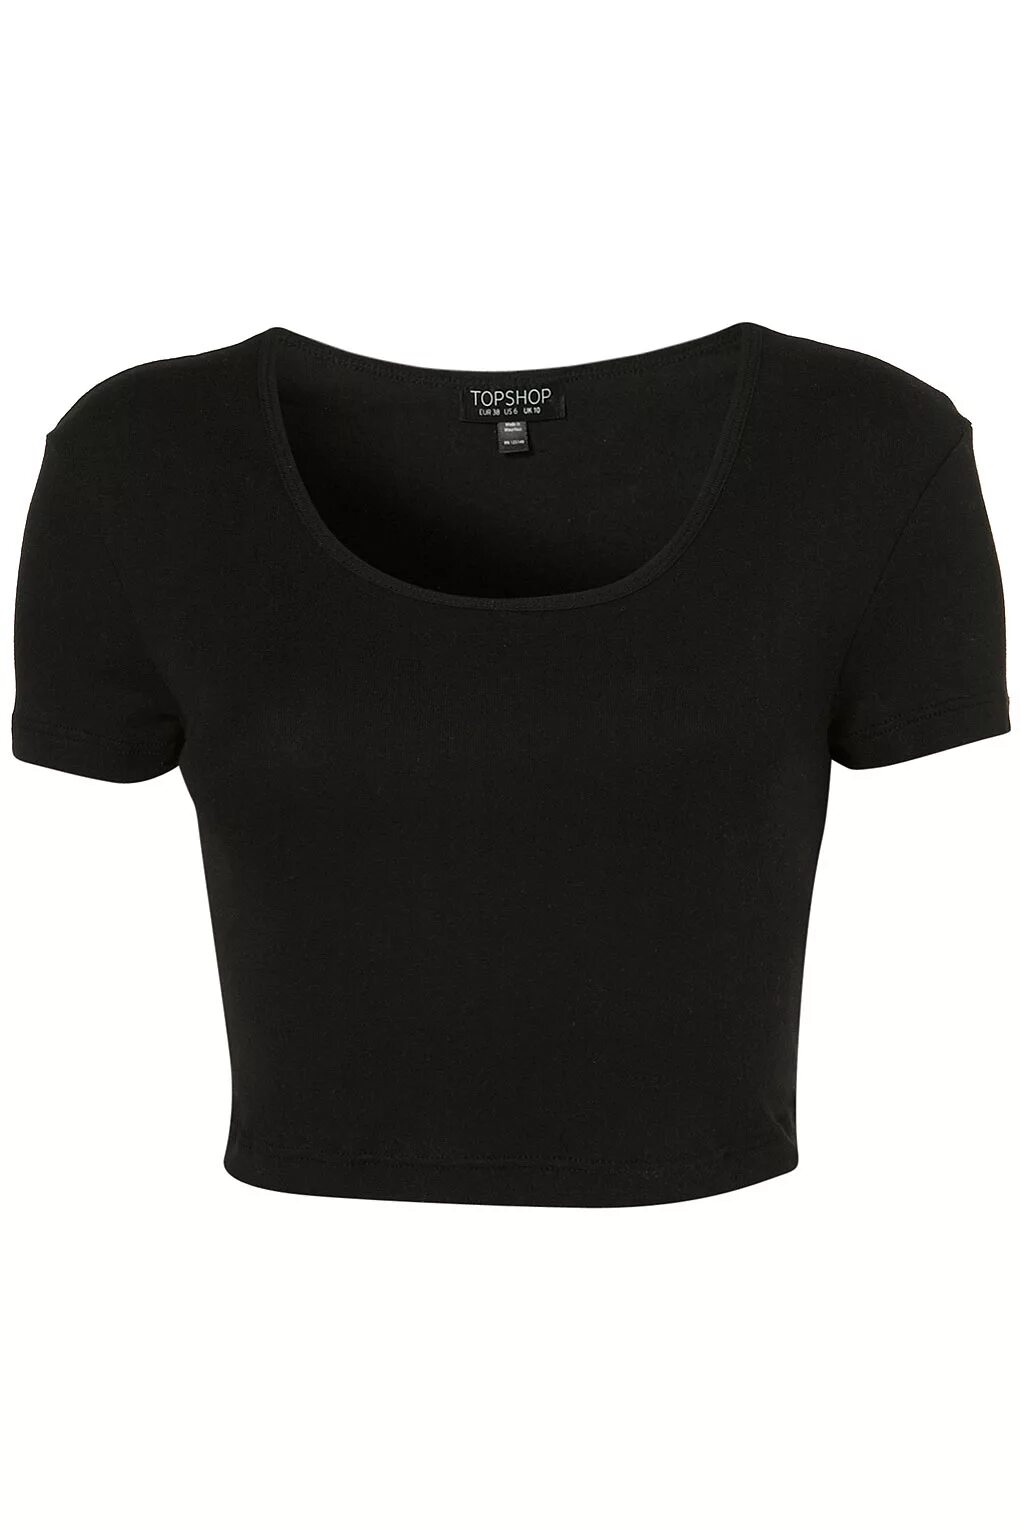 Топик черно белый. Черная футболка женская. Футболка топик. Короткая футболка женская. Черный топ футболка.